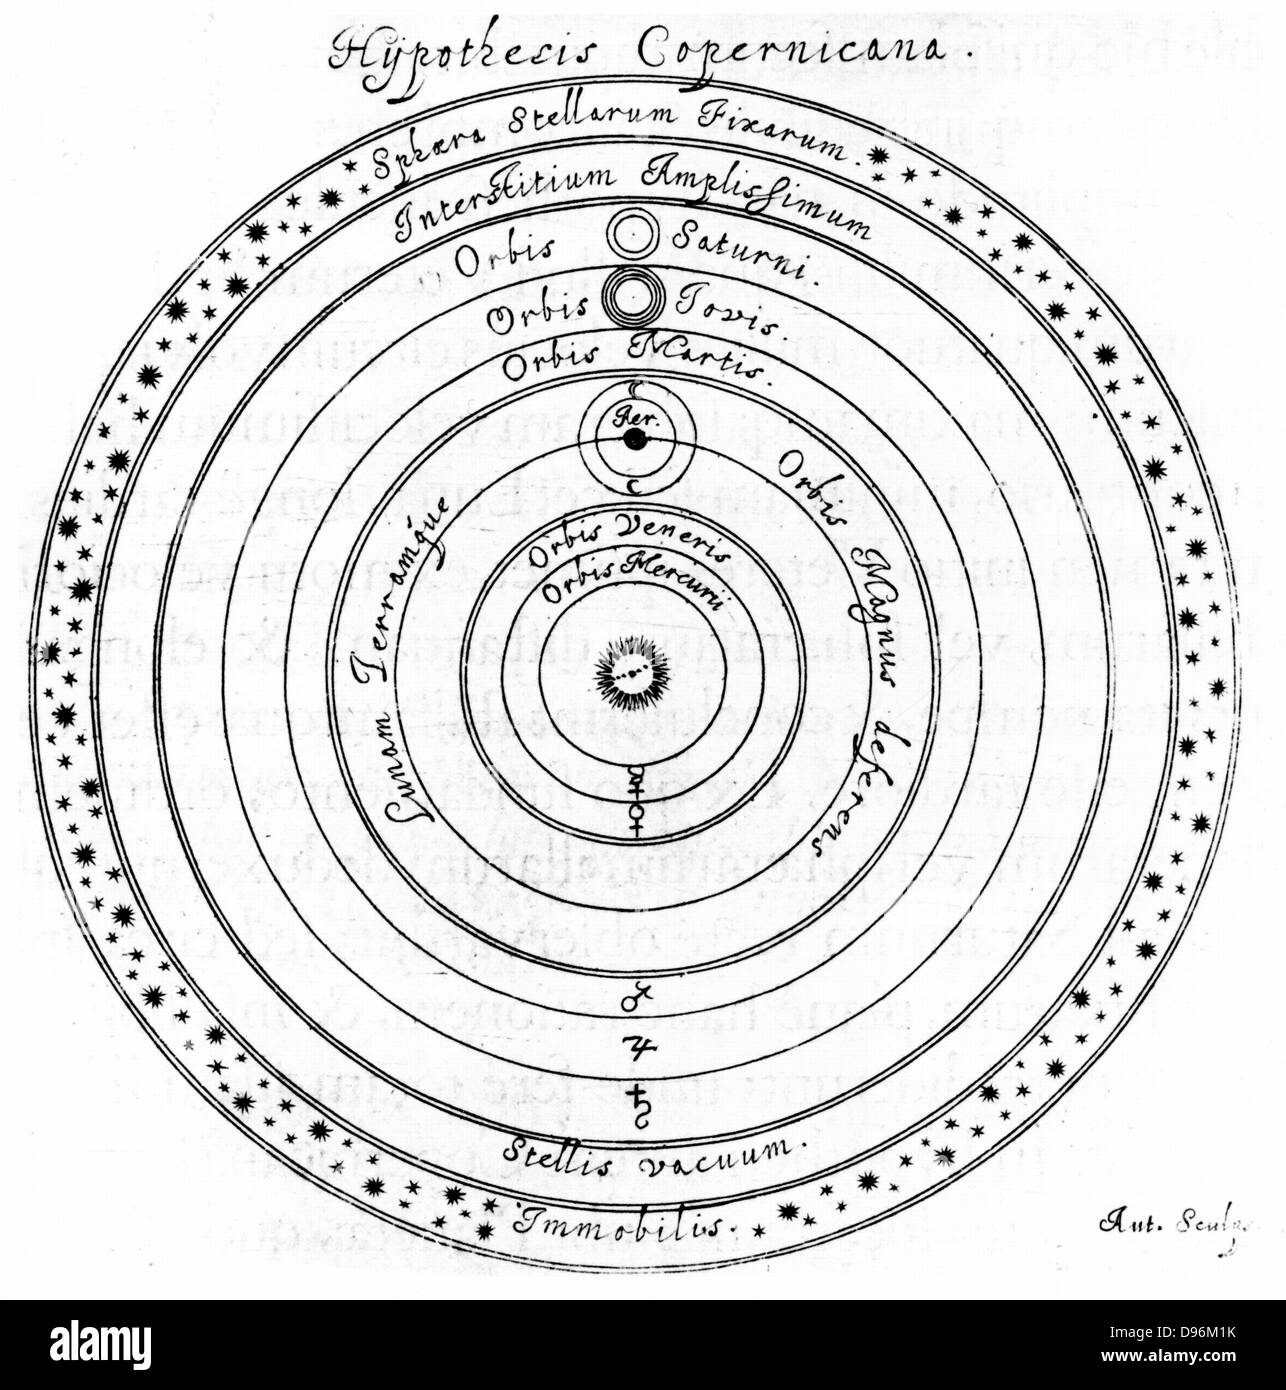 (Heliocéntrico) sistema copernicano del universo, mostrando el firmamento de las estrellas fijas. Desde Johannes Hevelius 'Selenographia', Gdansk (Danzig) 1647. Grabado Foto de stock